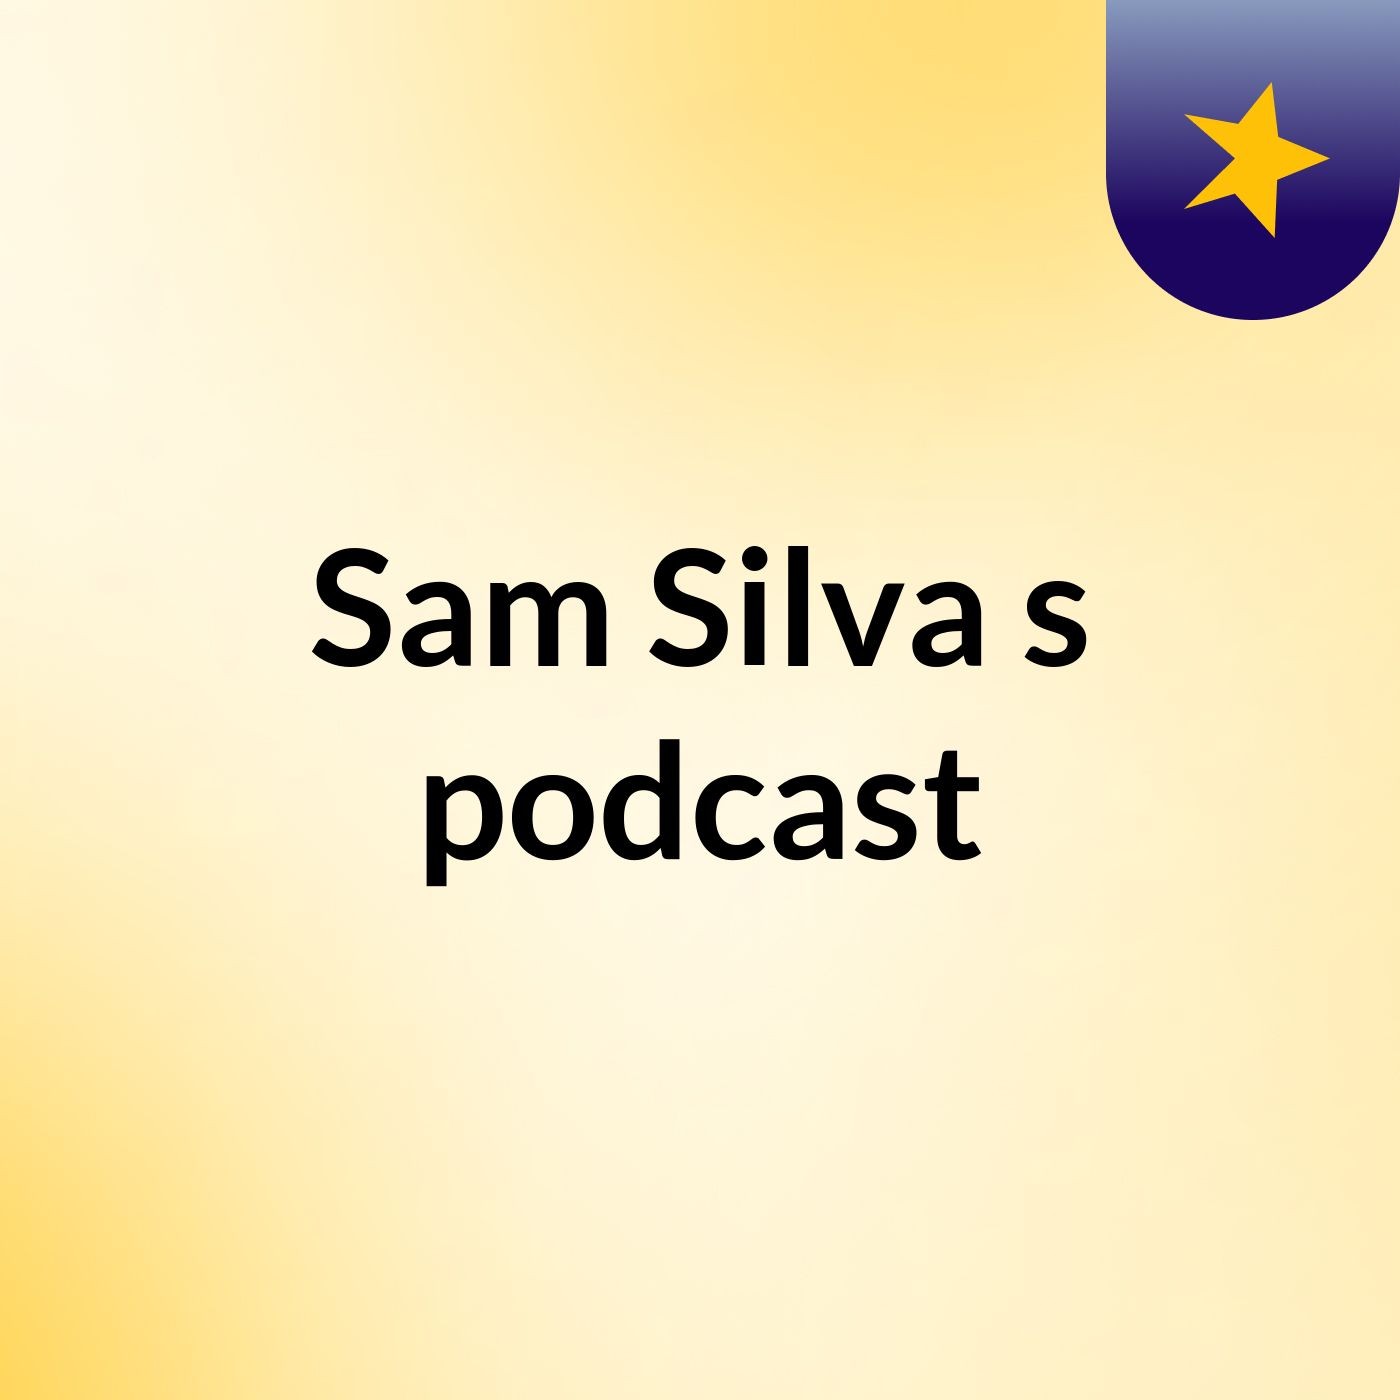 Sam Silva's podcast